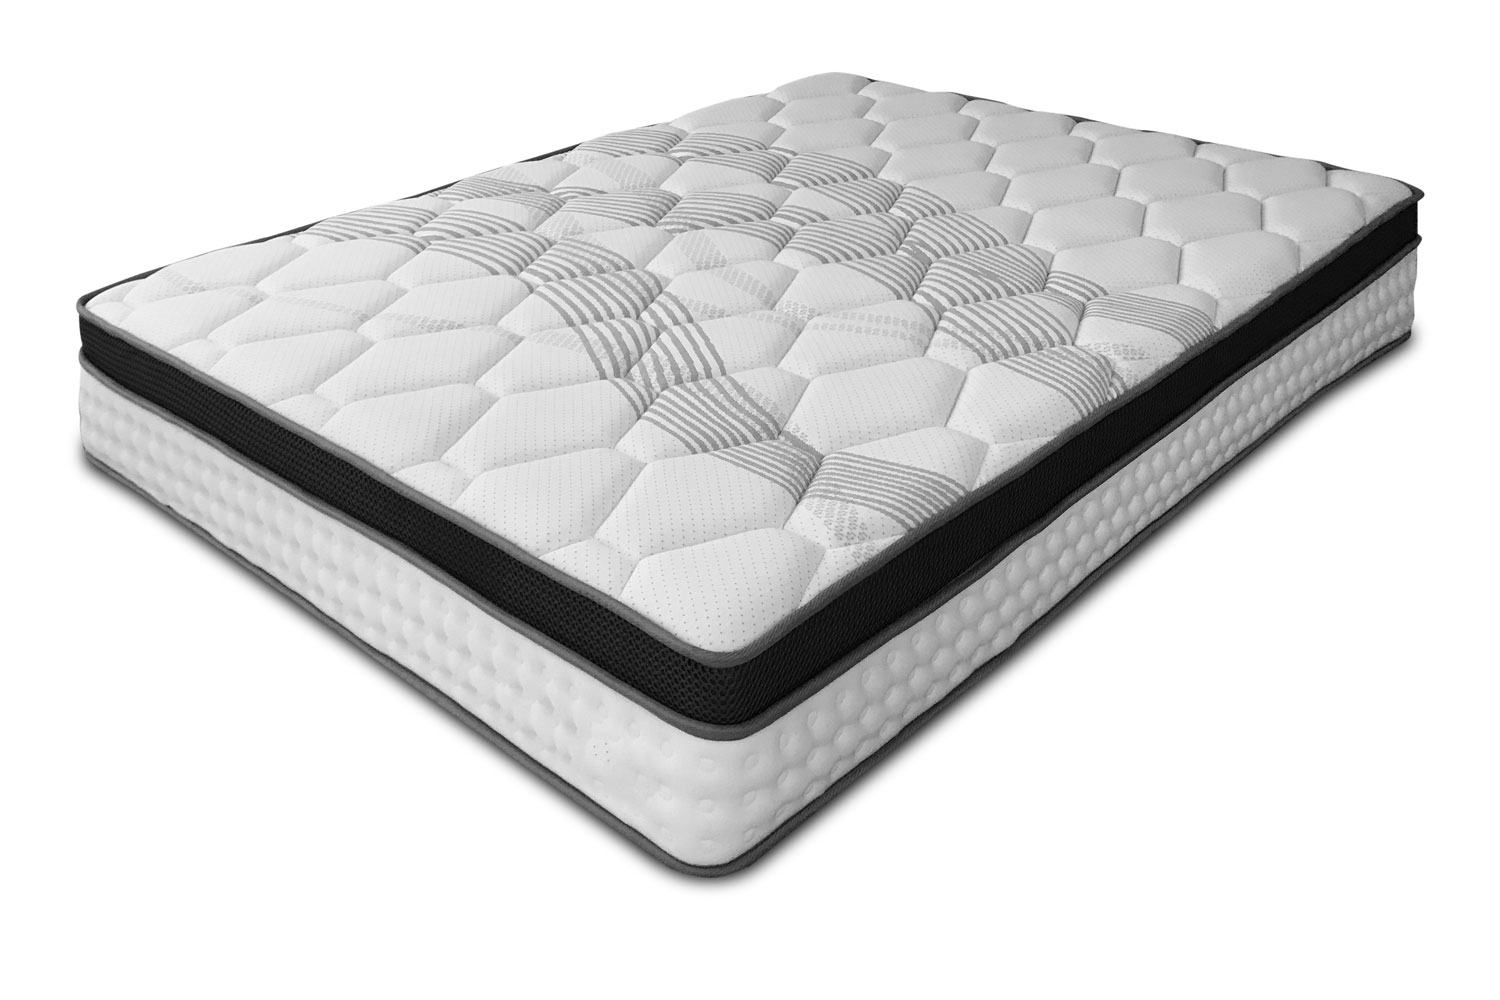 mattermoll mattress for sale